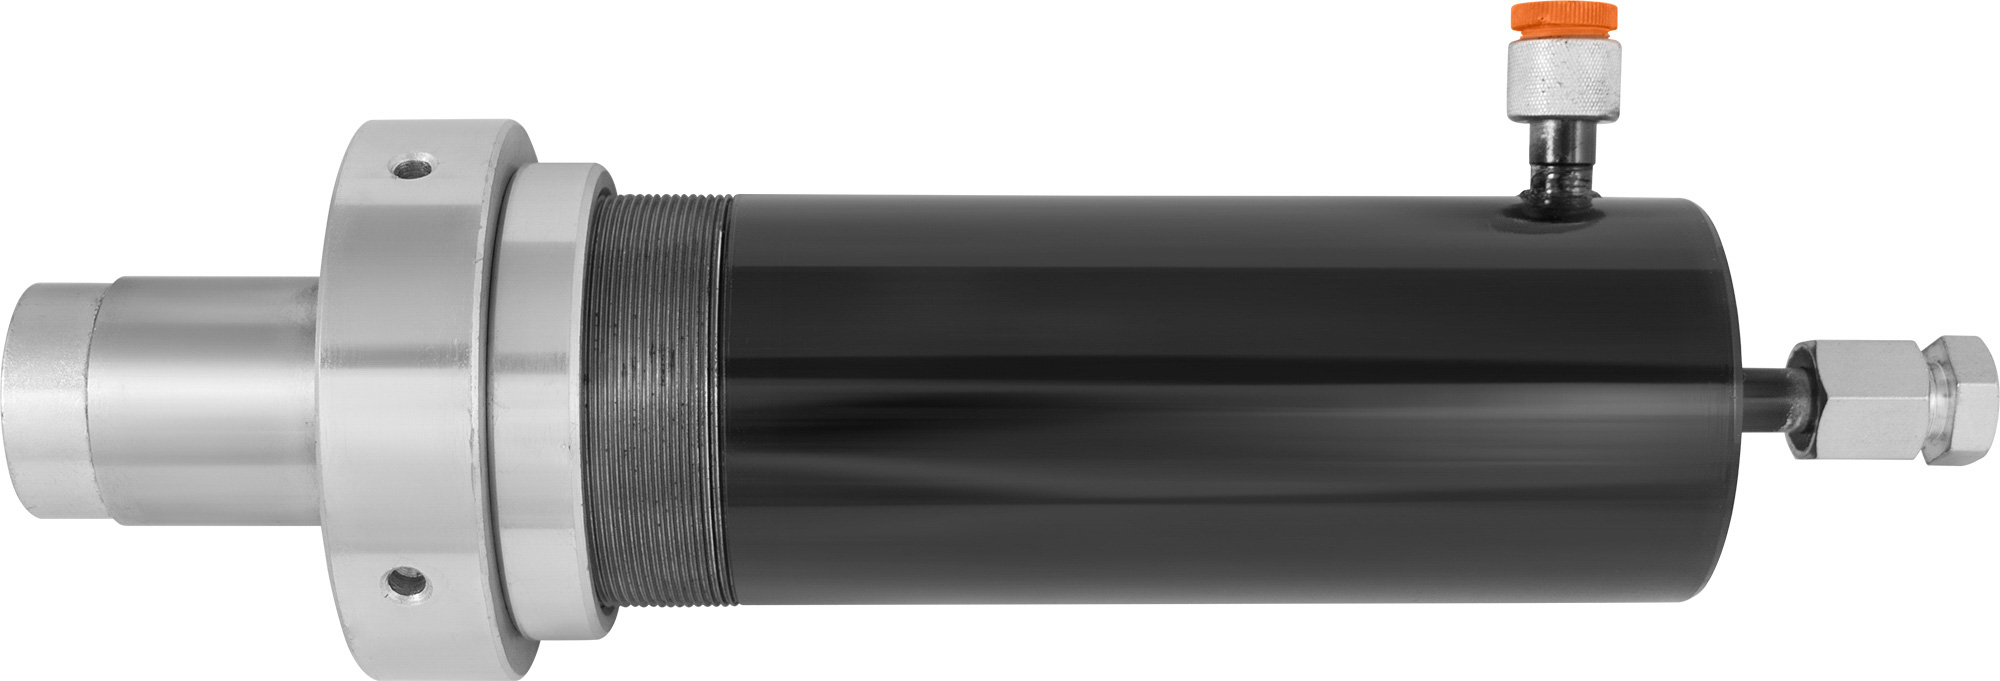 OHT630MC Рабочий цилиндр для гидравлического пресса OHT630M